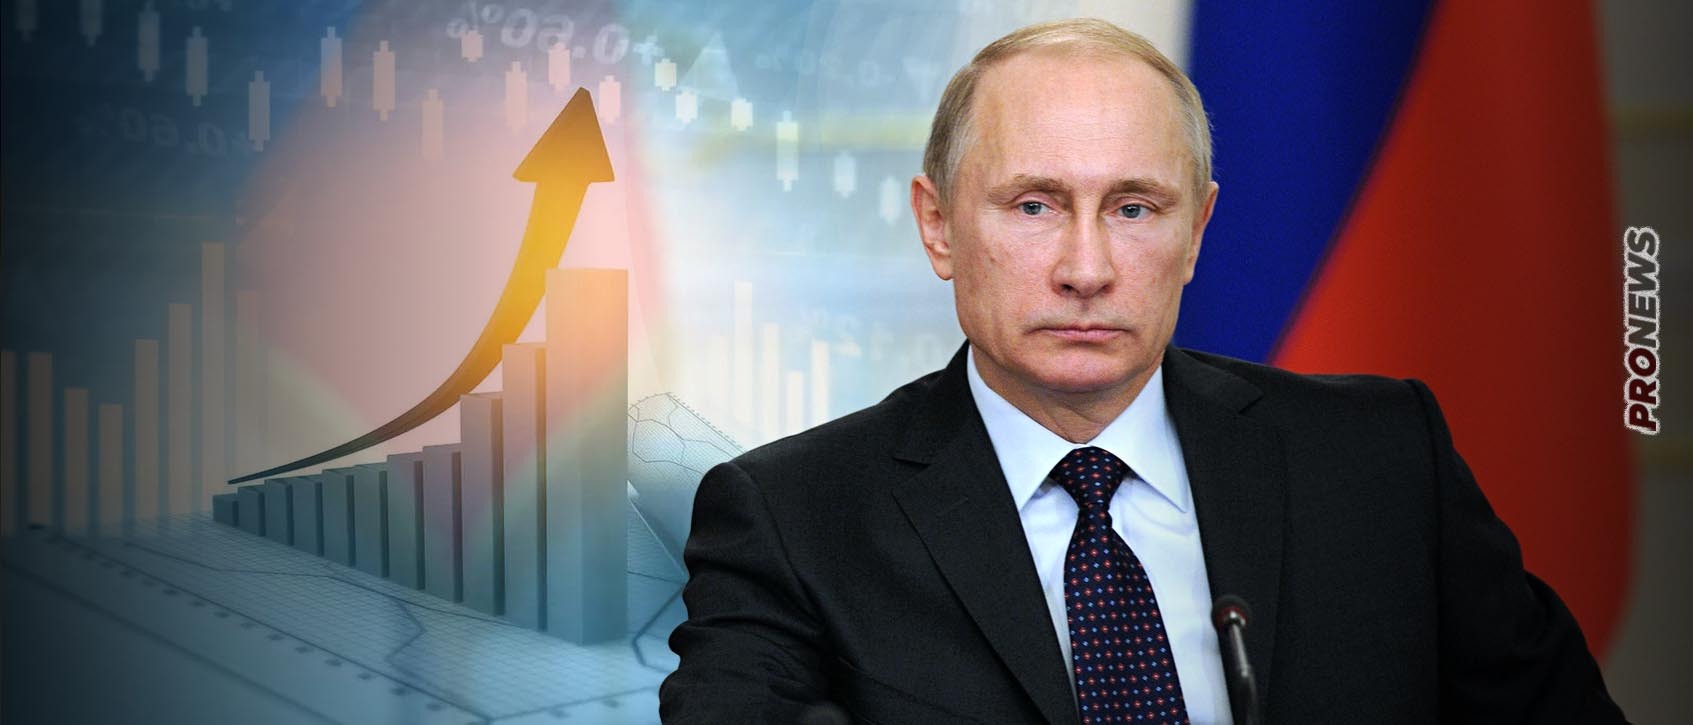 Πρώτη οικονομική δύναμη της Ευρώπης έγινε η Ρωσία: Πέρασε τη Γερμανία σε ΑΕΠ το 2022